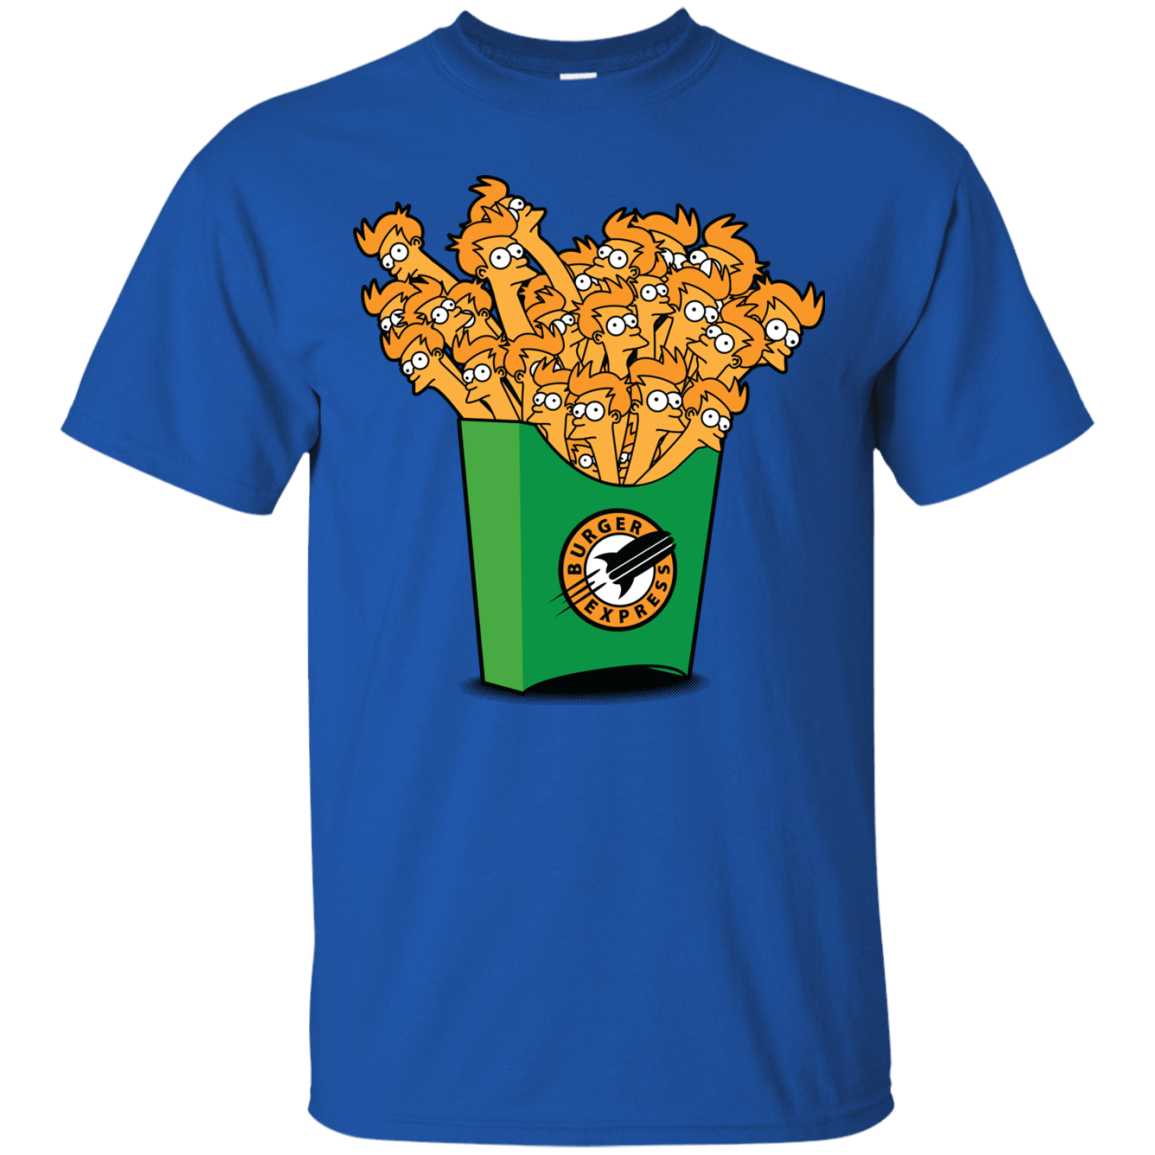 T-Shirts Royal / Small Box of Fries T-Shirt